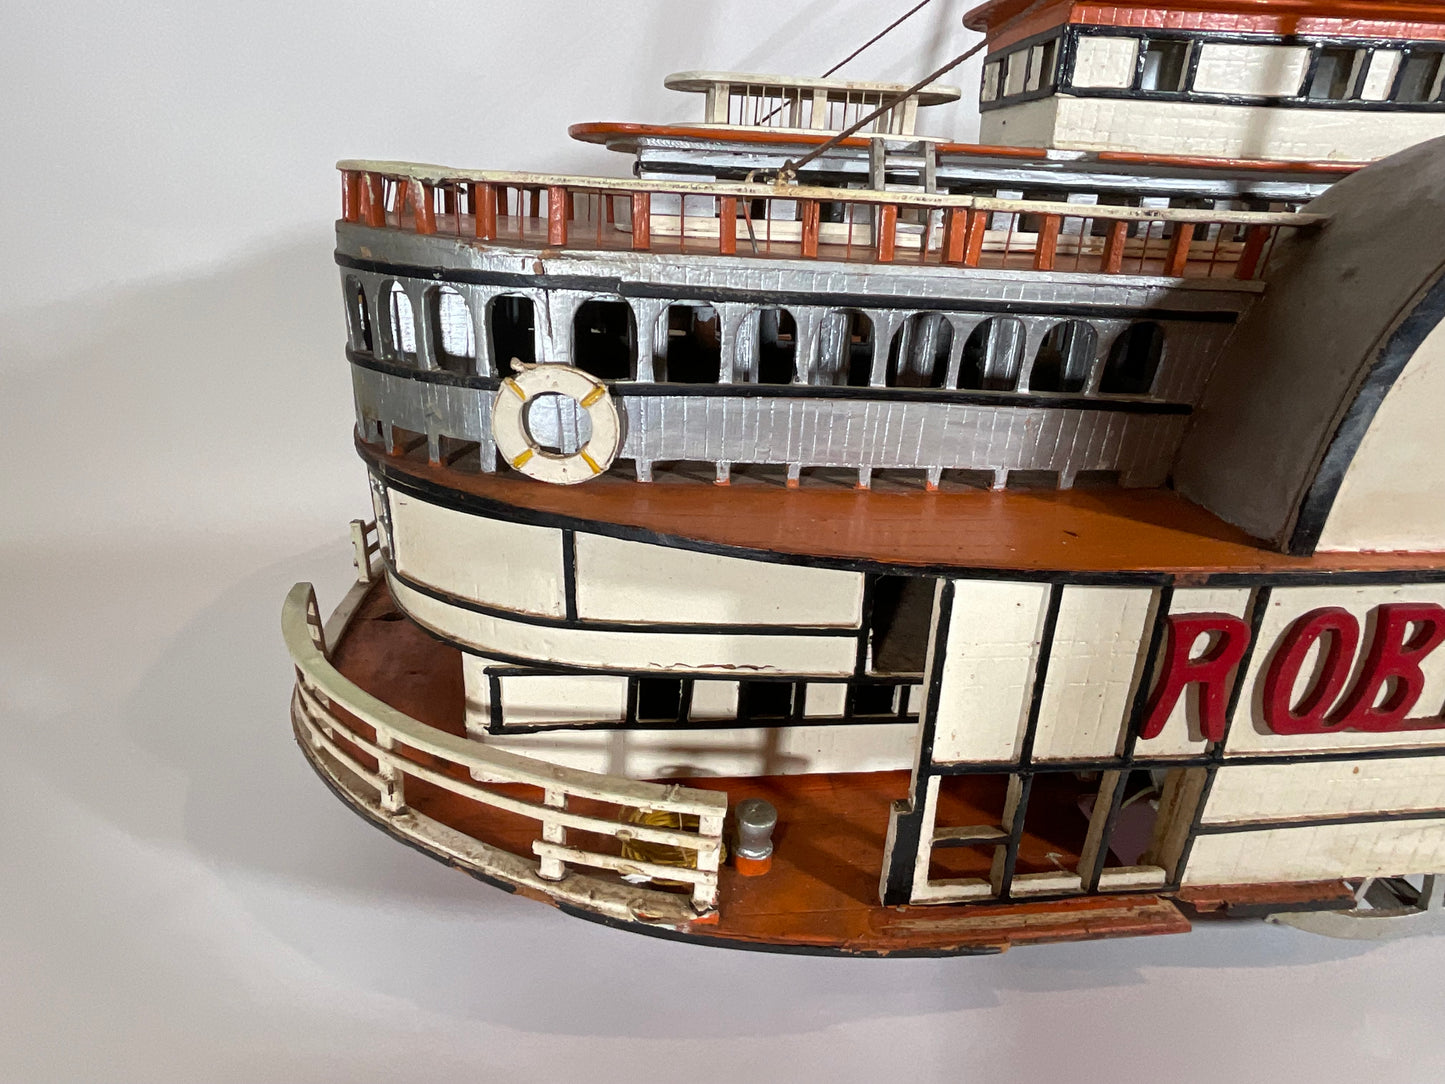 Ship's Model "ROBT E. LEE"